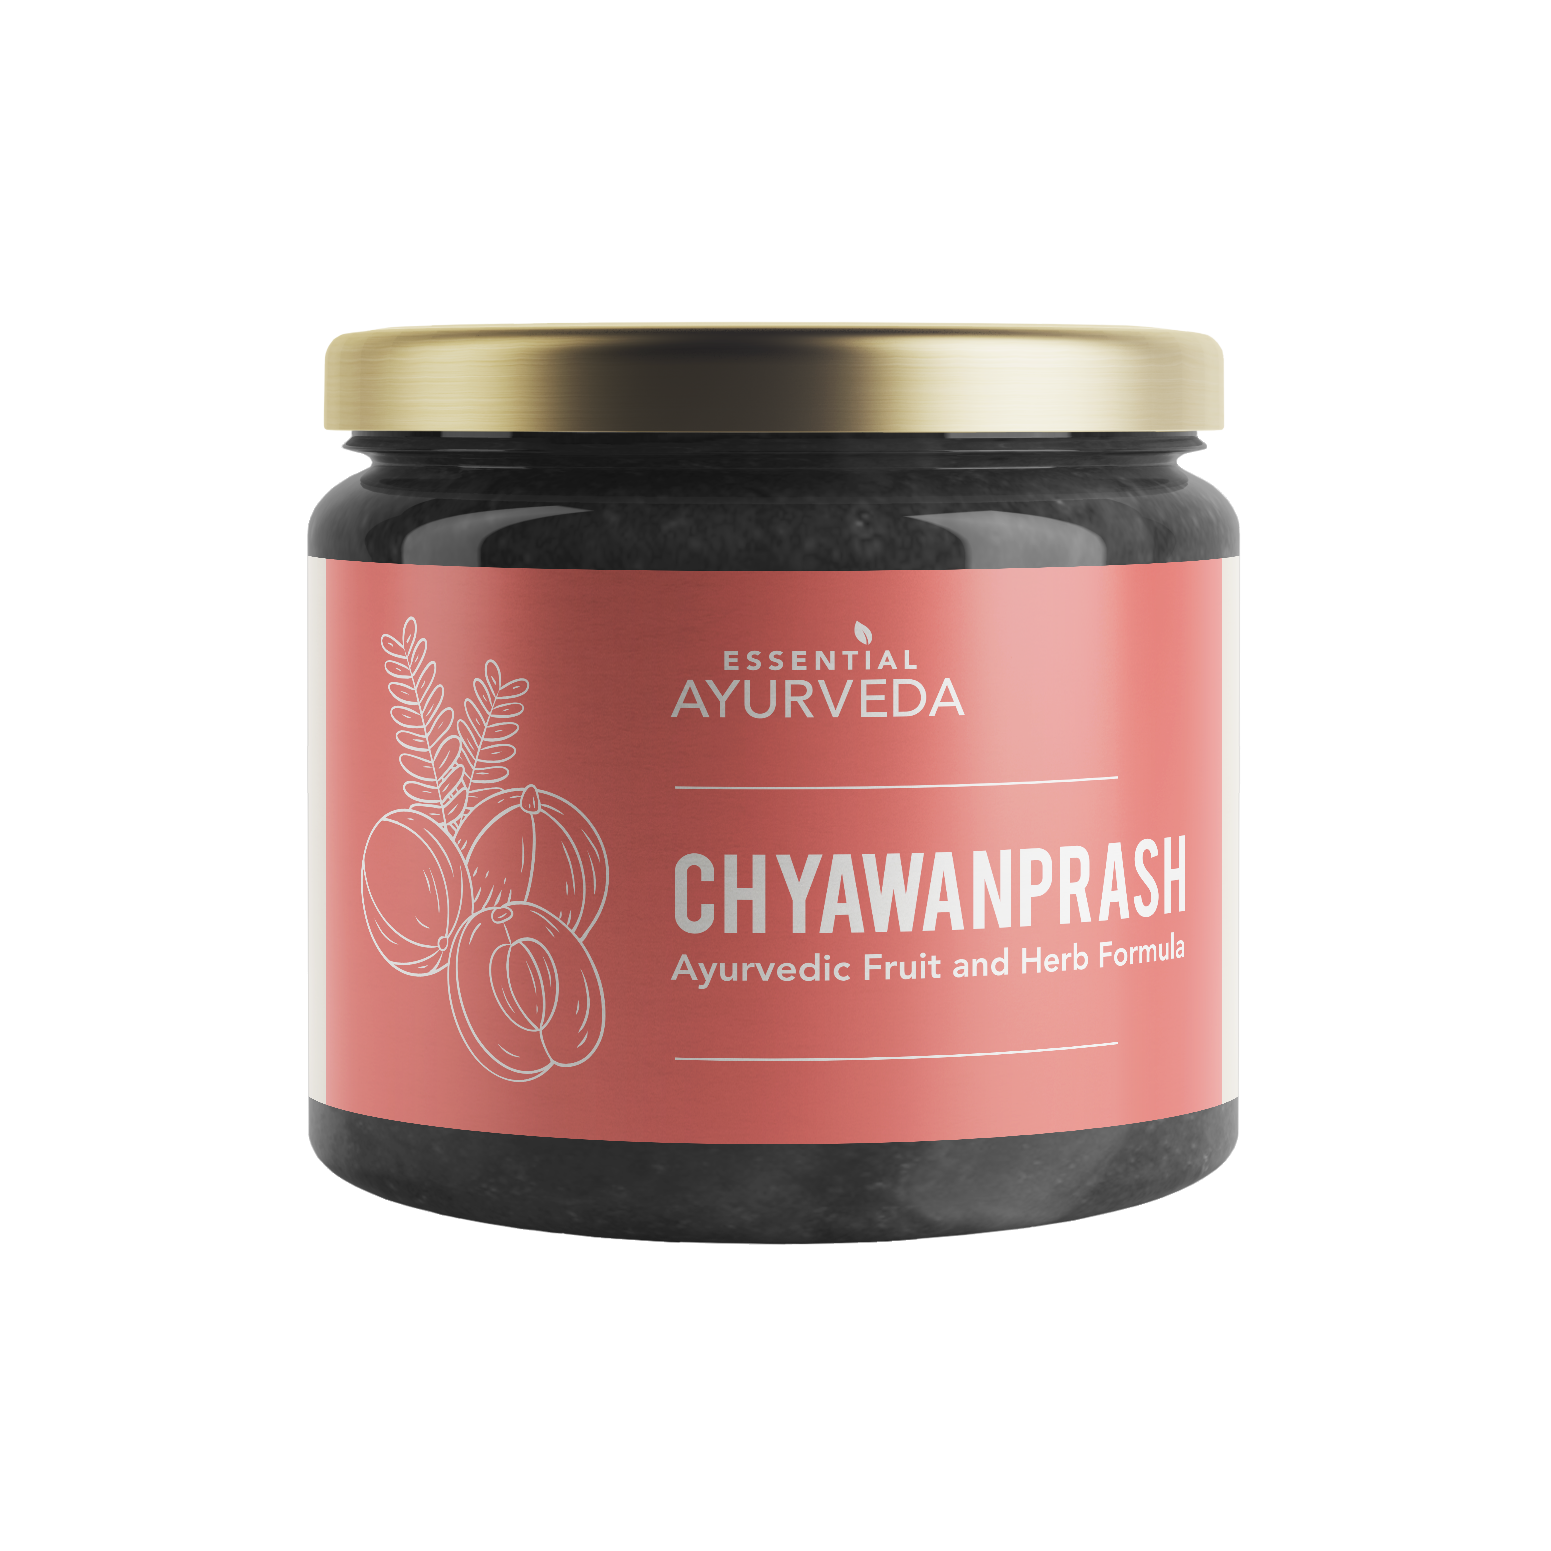 Chyawanprash - tasty Ayurvedic fruit and herbal jam